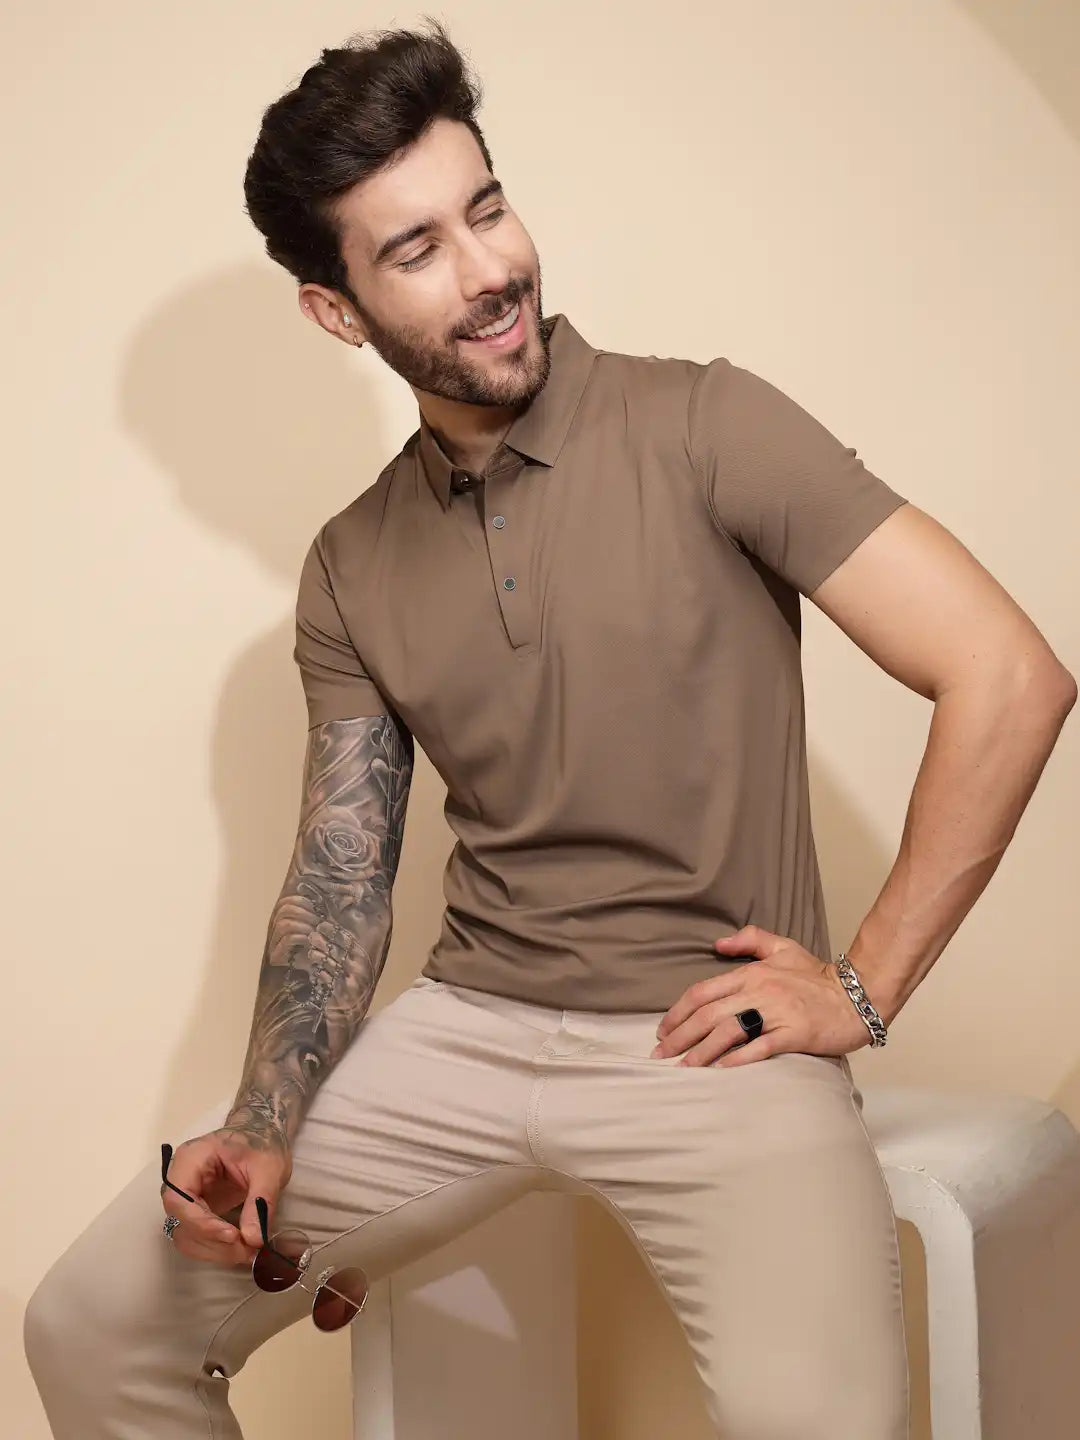 Brown Polyester Blend Regular Fit T-Shirt For Men